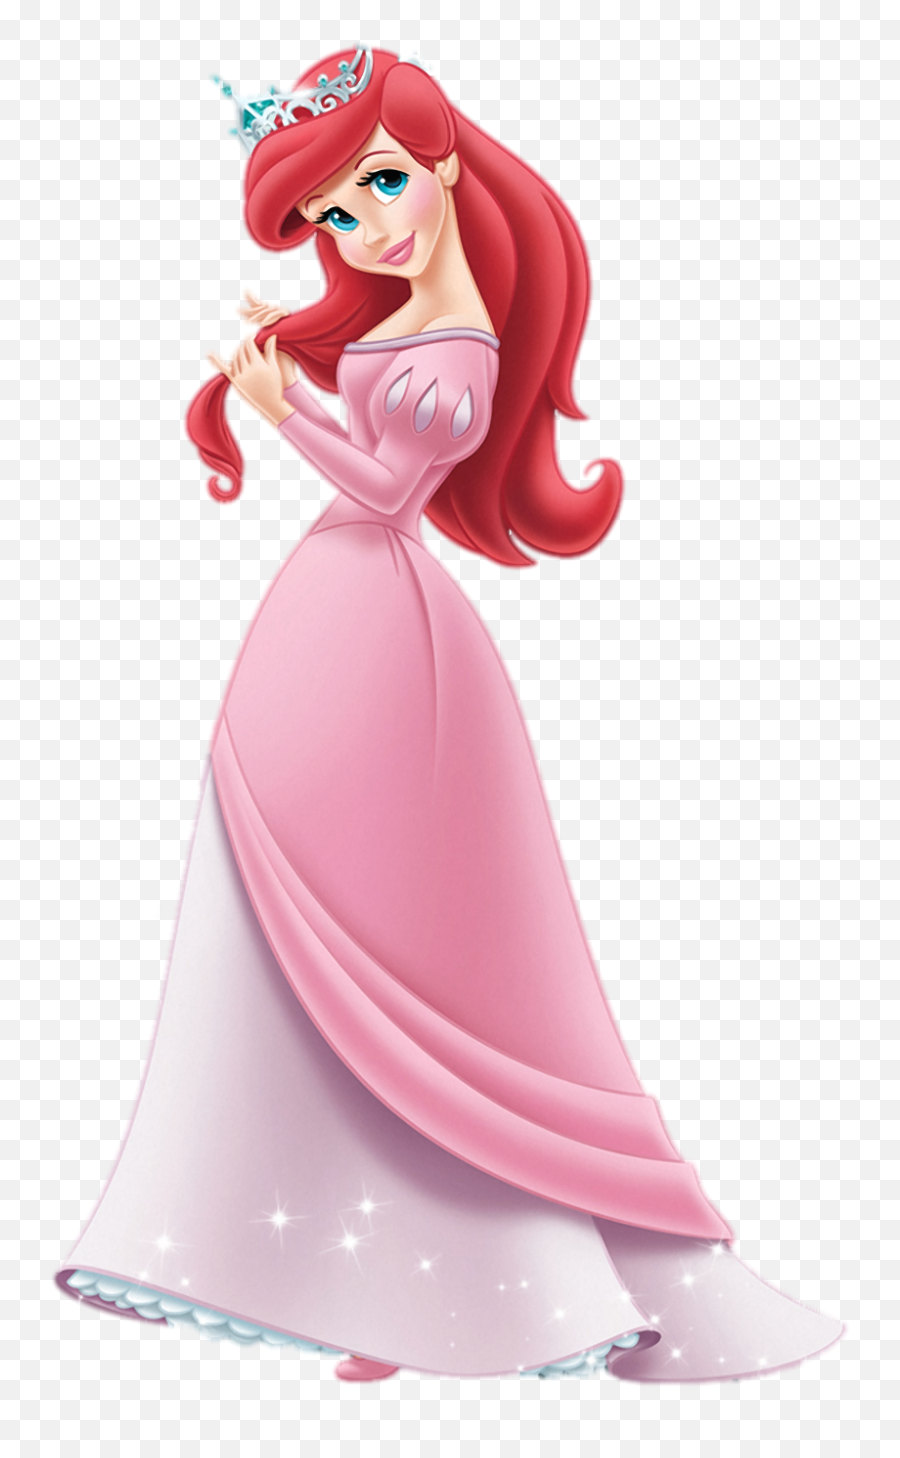 Ariel The Little Mermaid Prince Belle Disney Princess - Little Mermaid Princess Ariel Png,Disney Princess Png